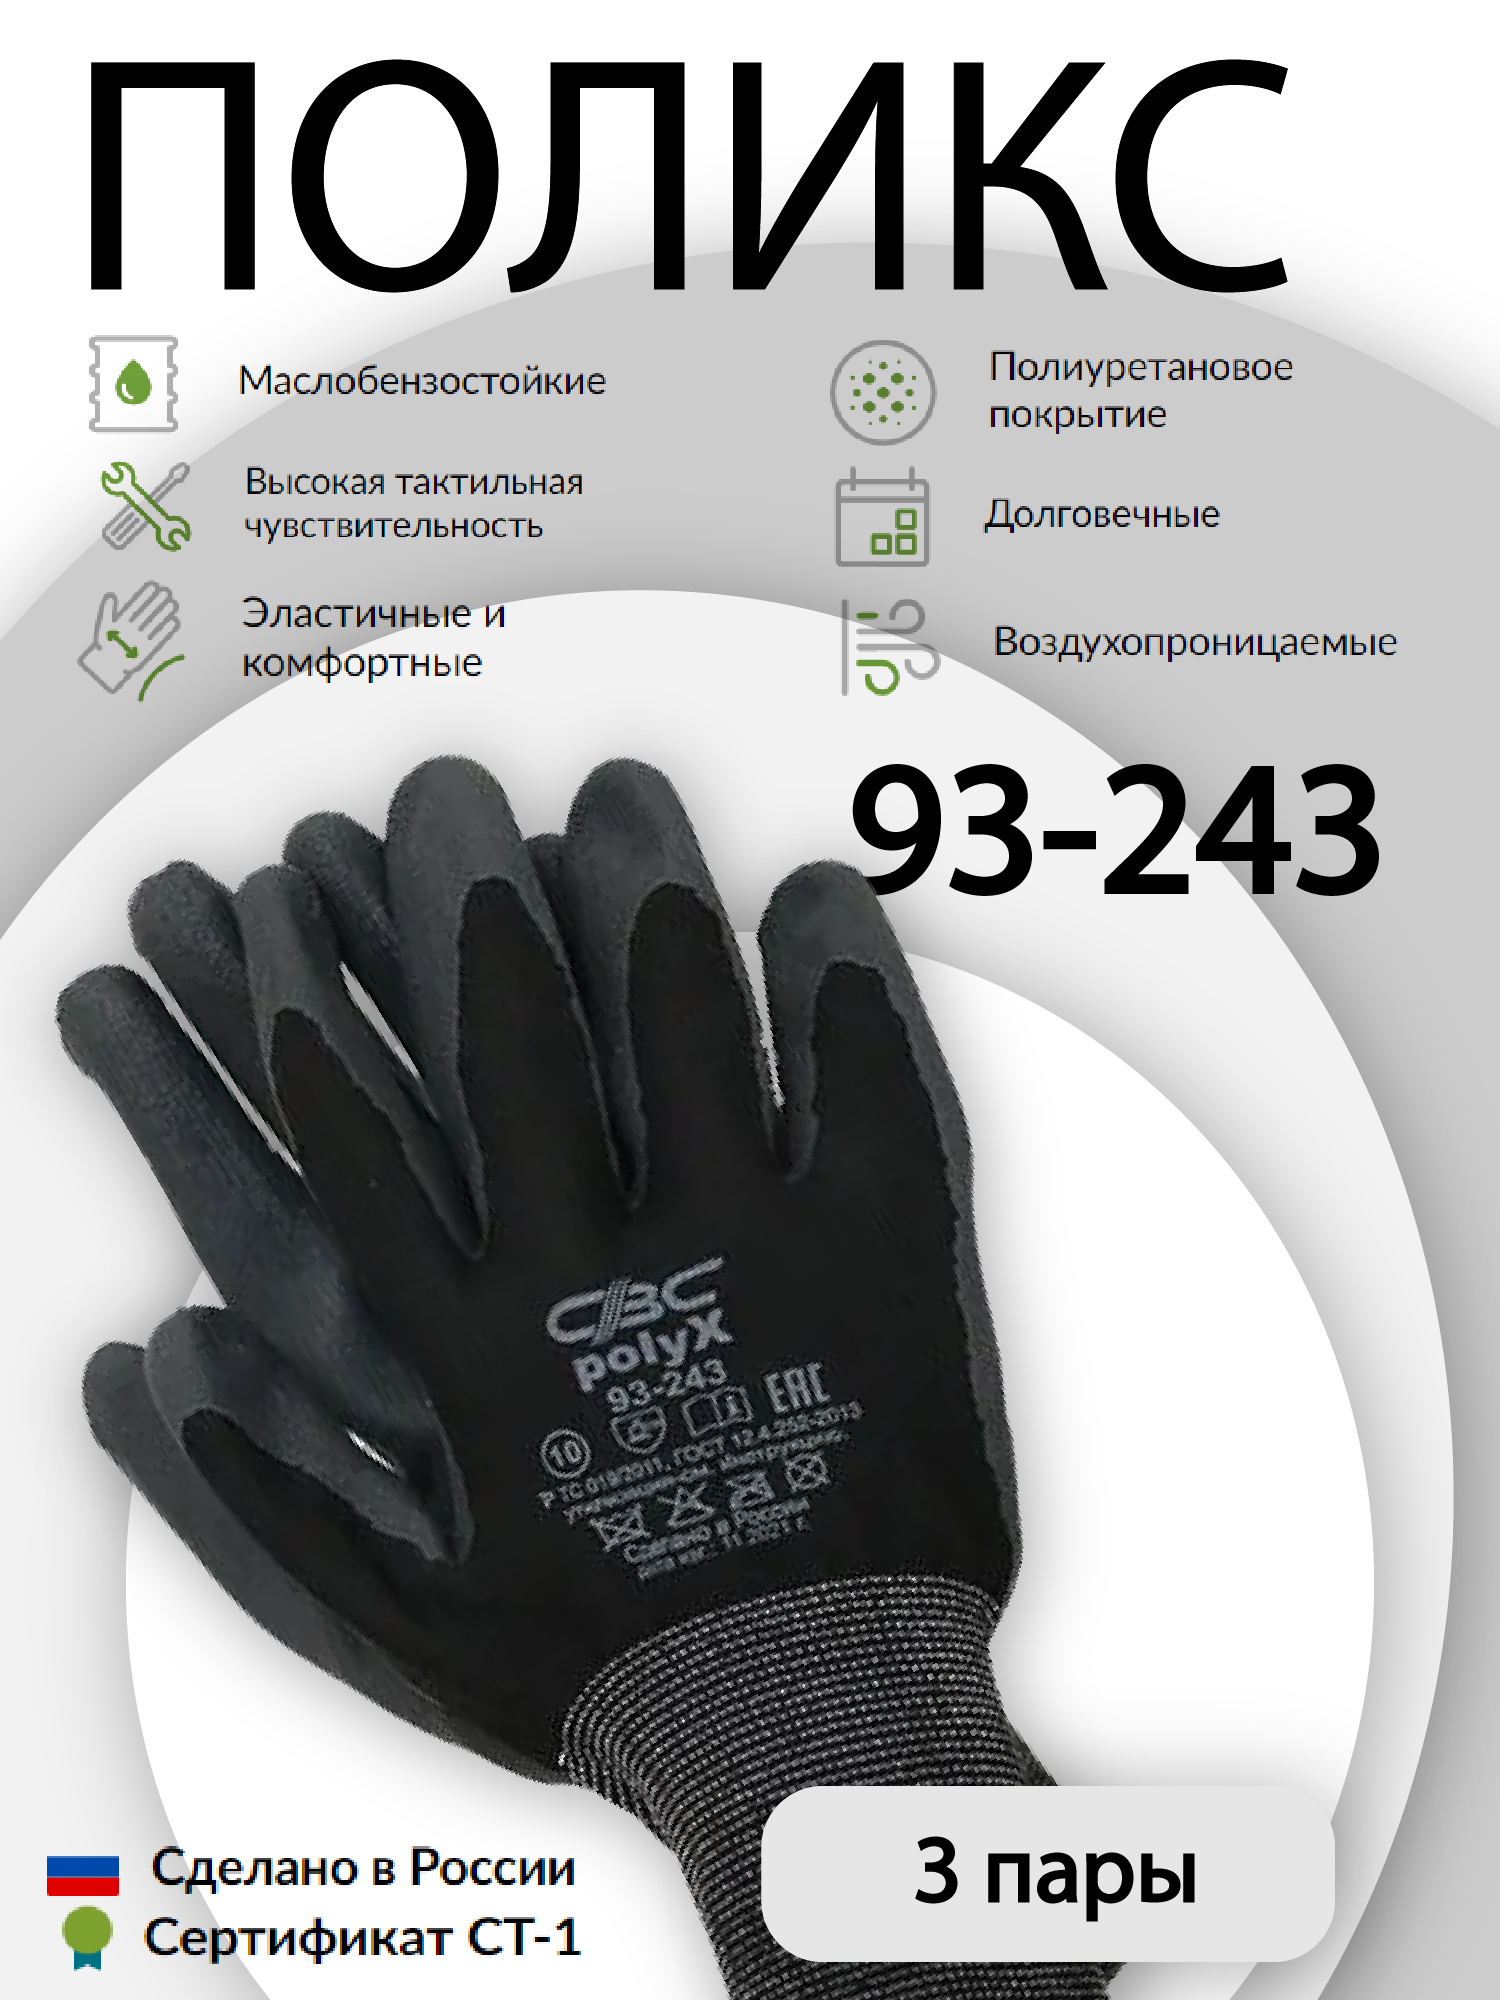 Перчатки защитные СВС ПОЛИКС 93-243 эластичные, с полиуретановым покрытием 3 пары садовые эластичные перчатки truper